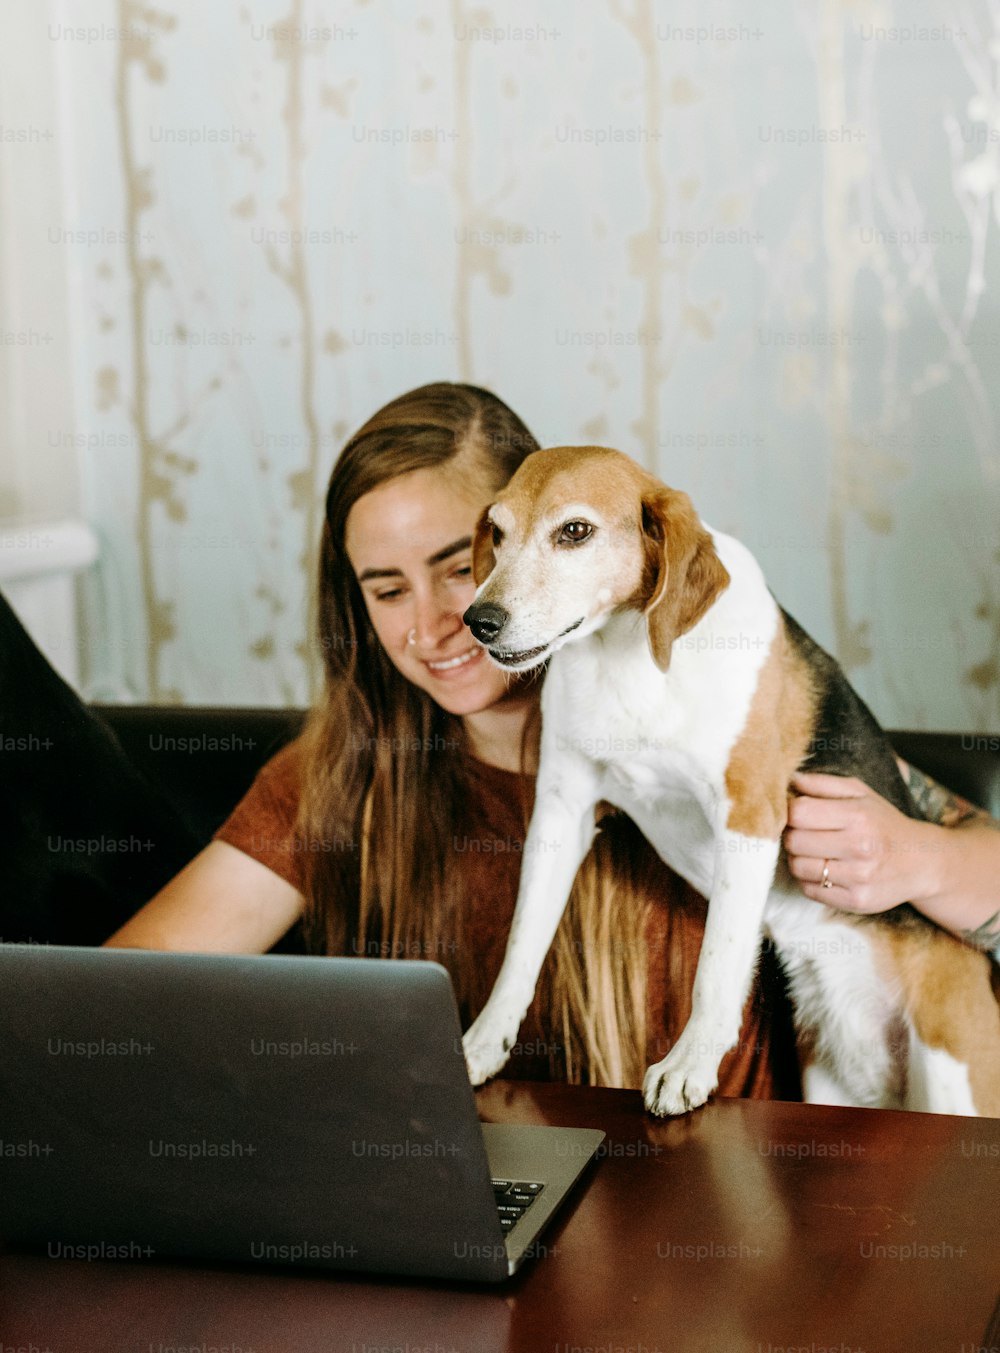 Une femme assise à une table avec un chien sur ses genoux